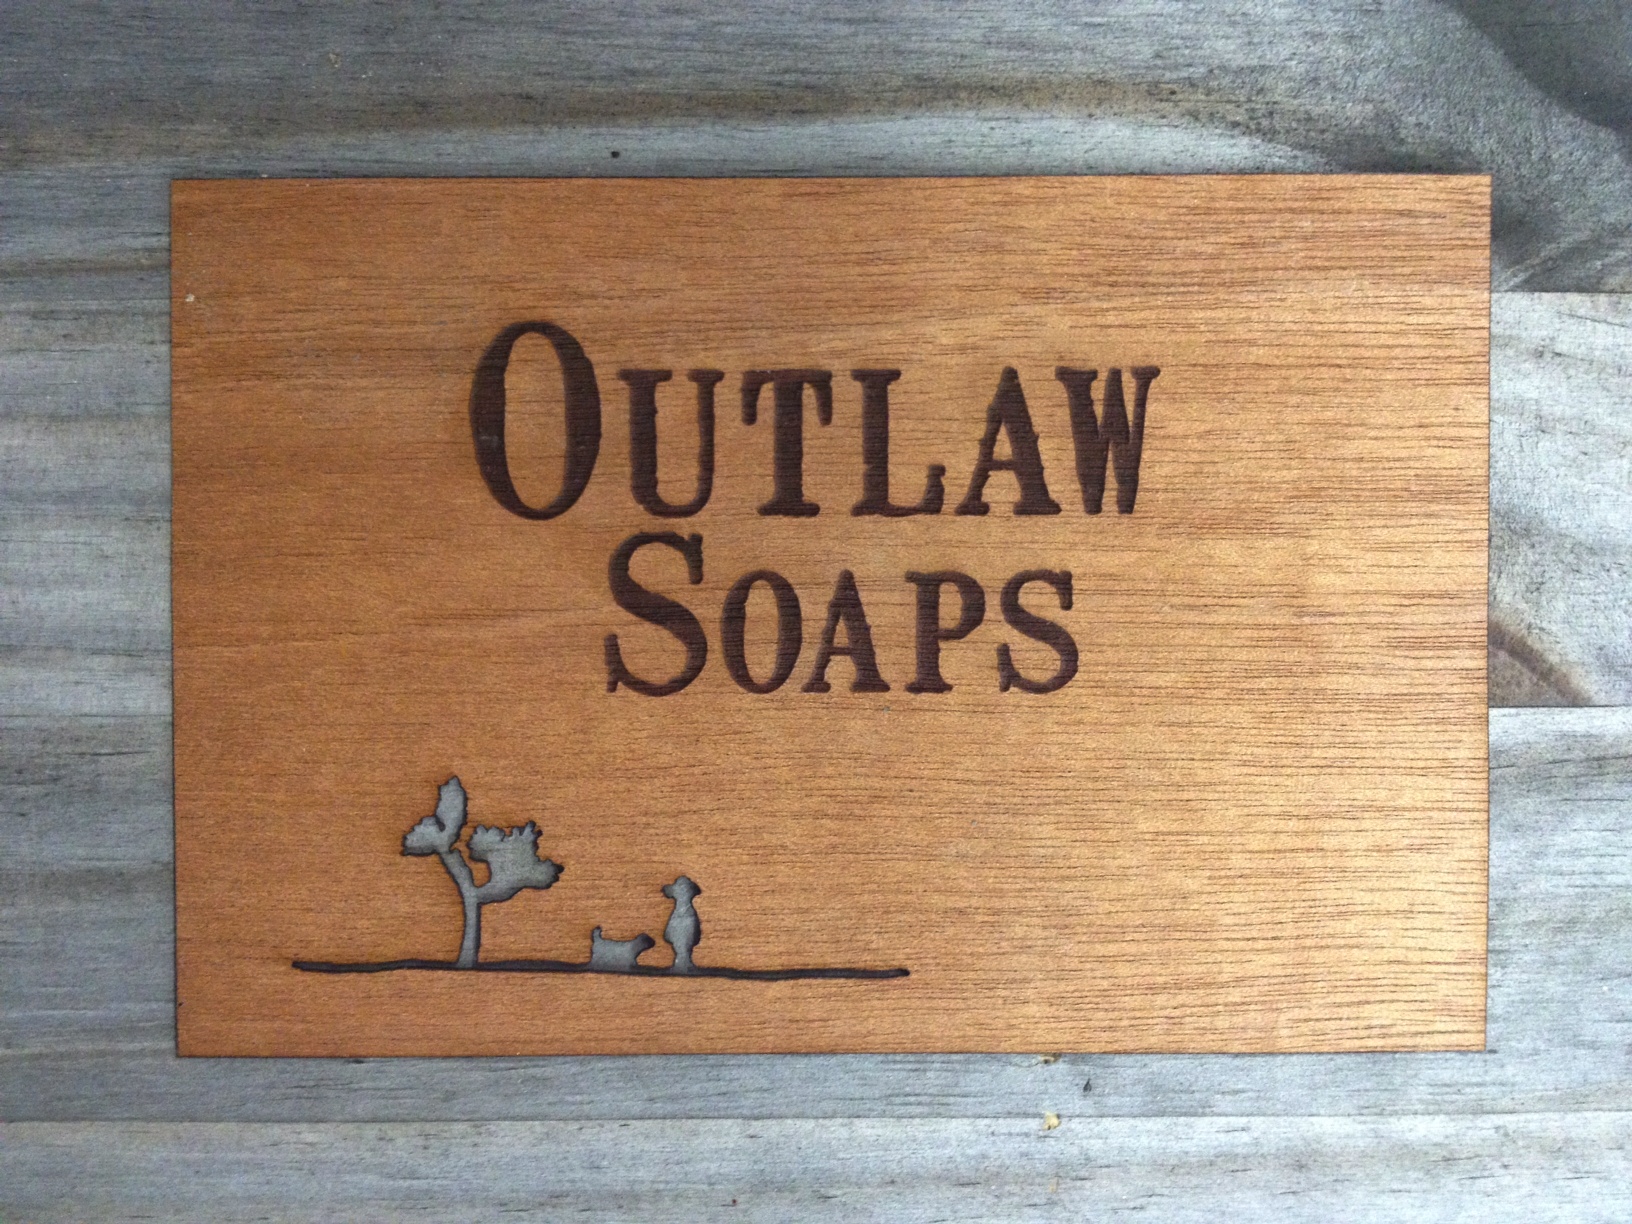 outlaw logo